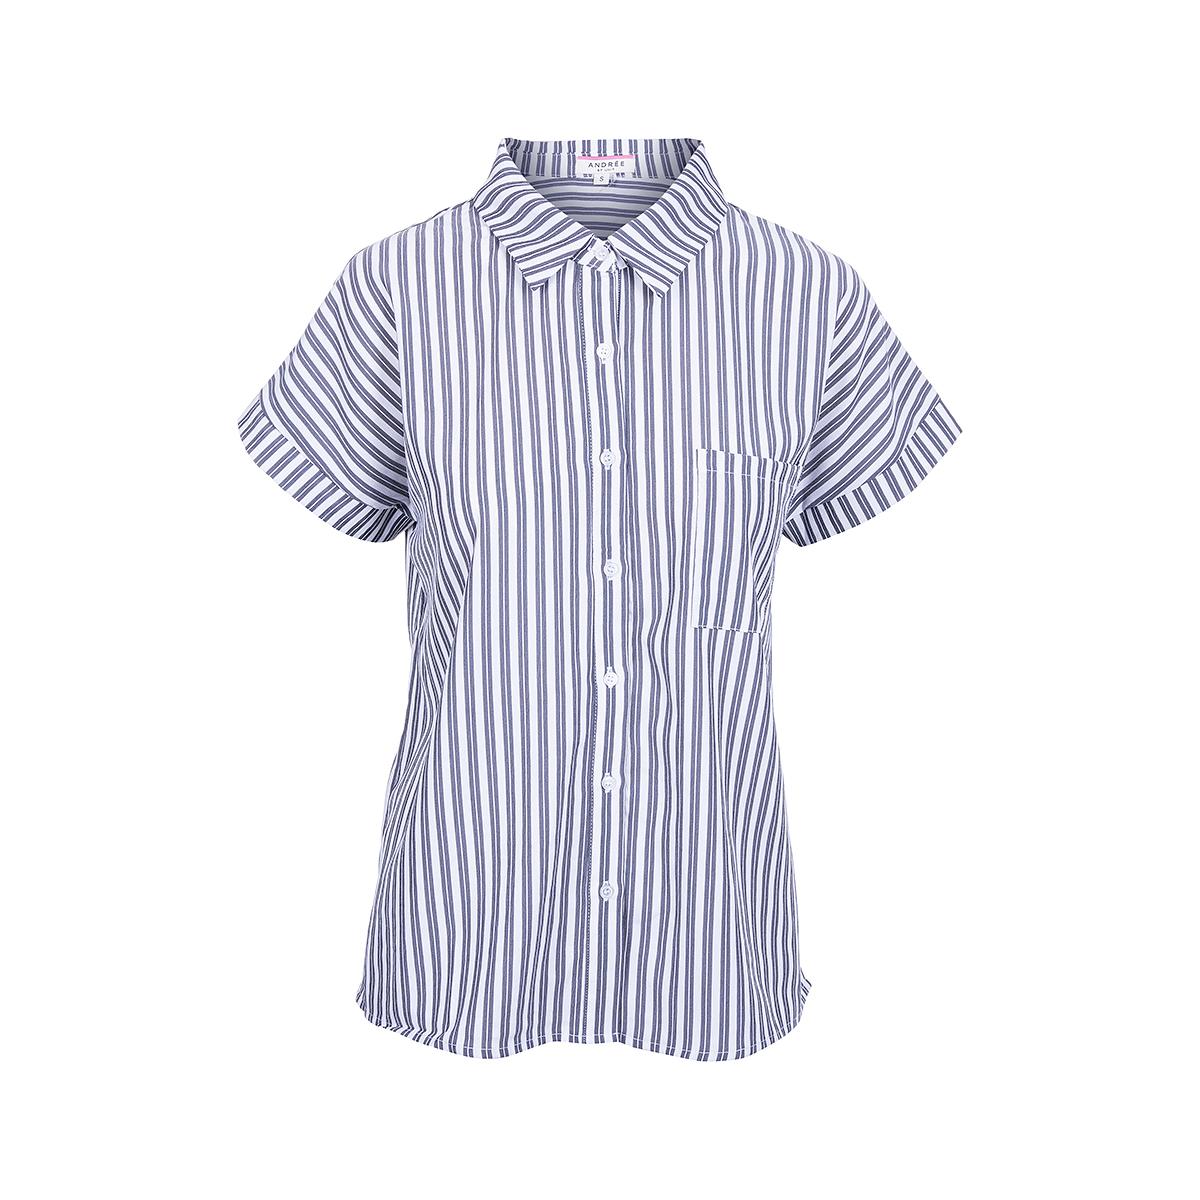  Women's Striped Short Sleeve Button Down Shirt